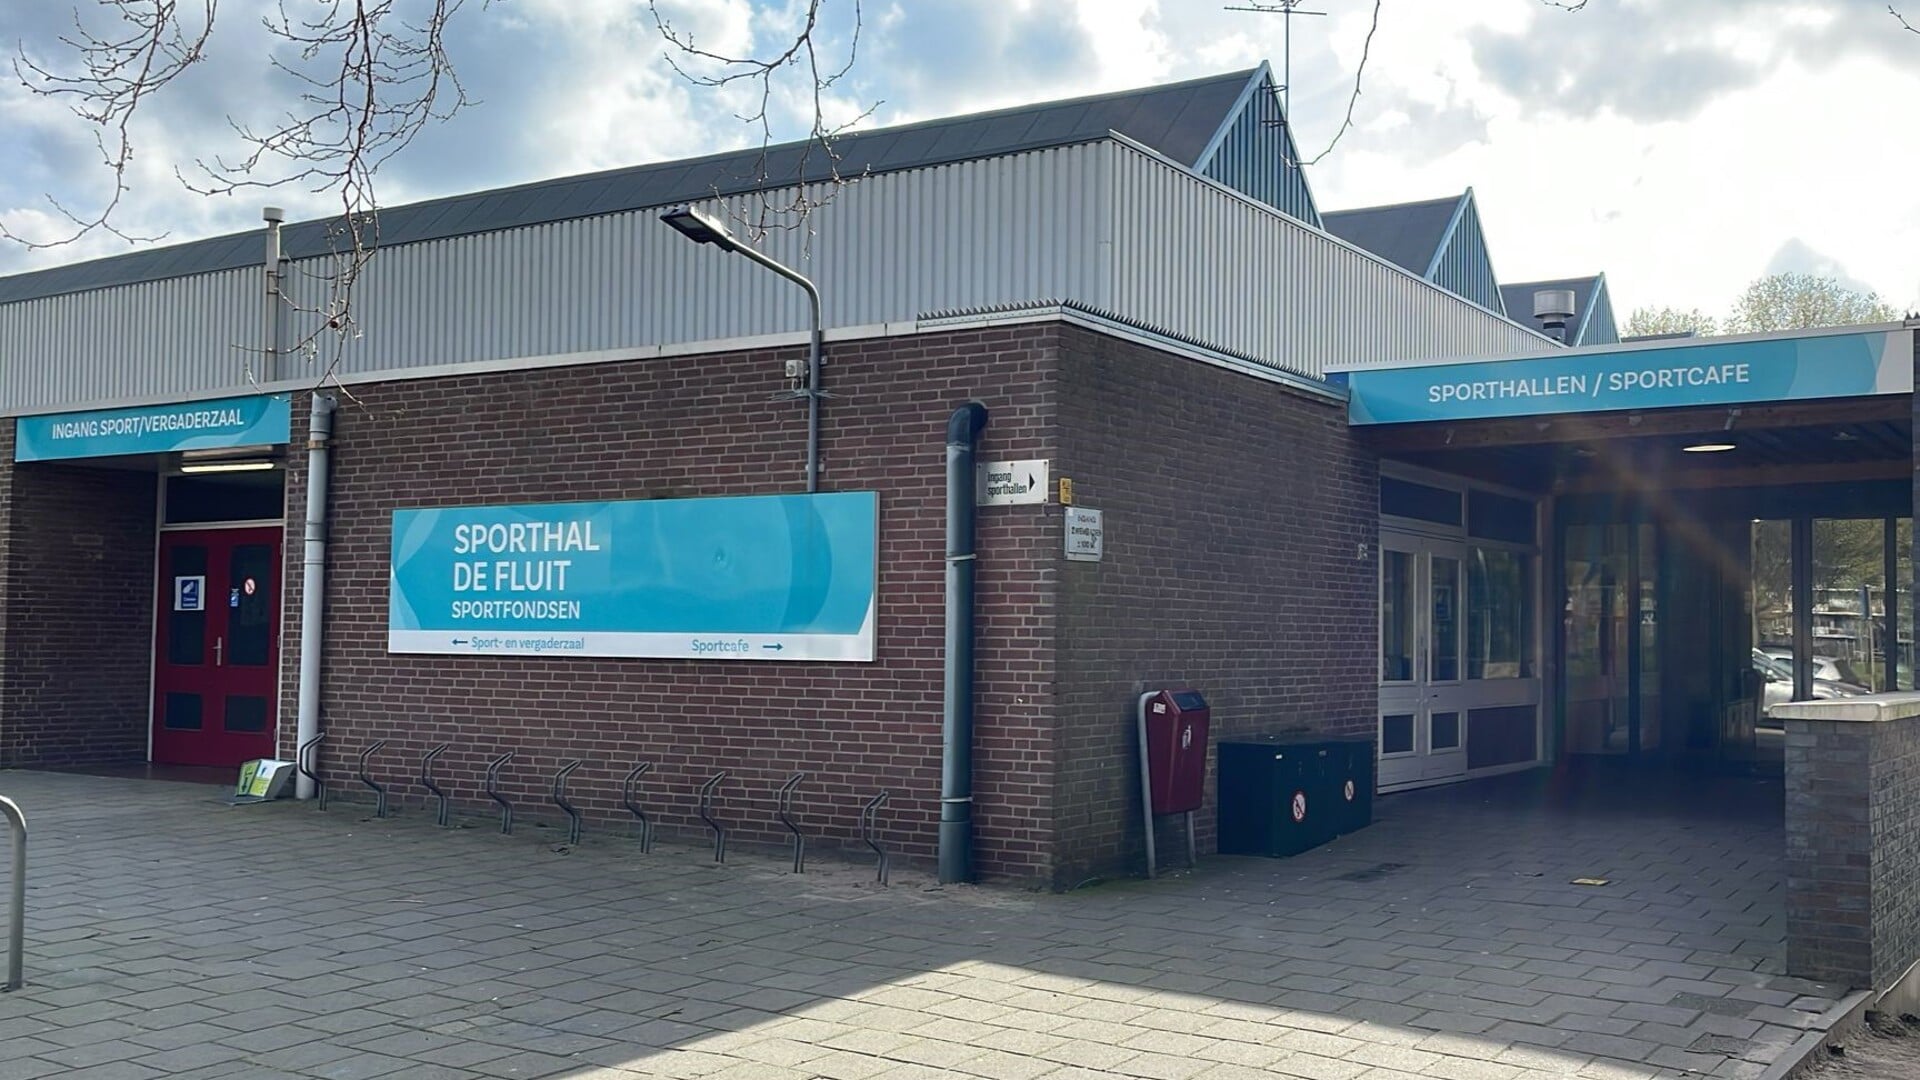 De ingangen van sportcentrum De Fluit waarin De Tuinkamer van Noord gevestigd is (foto: gemeente LV).